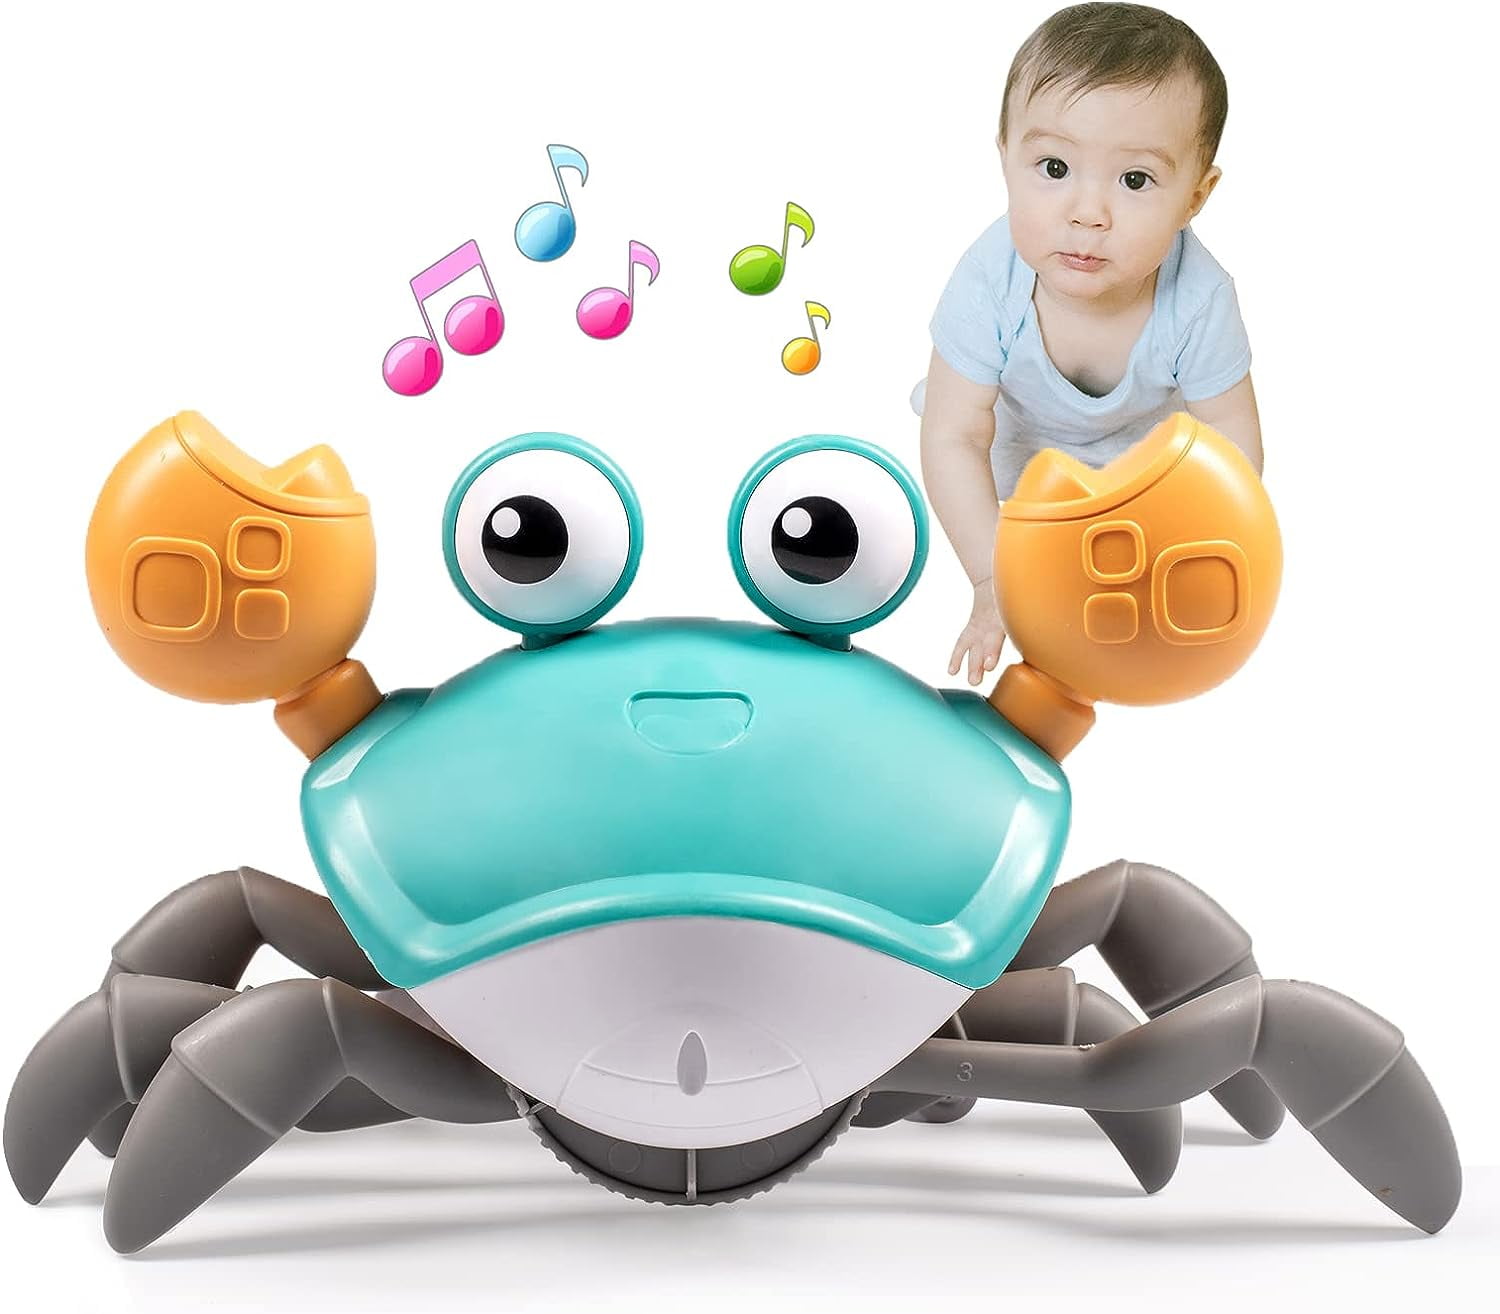 Sensing Crawling Crab Tummy Time Baby Toys Kids Interactive Walking  Electronic Musical Walking Crawling Sensing Crab Toys